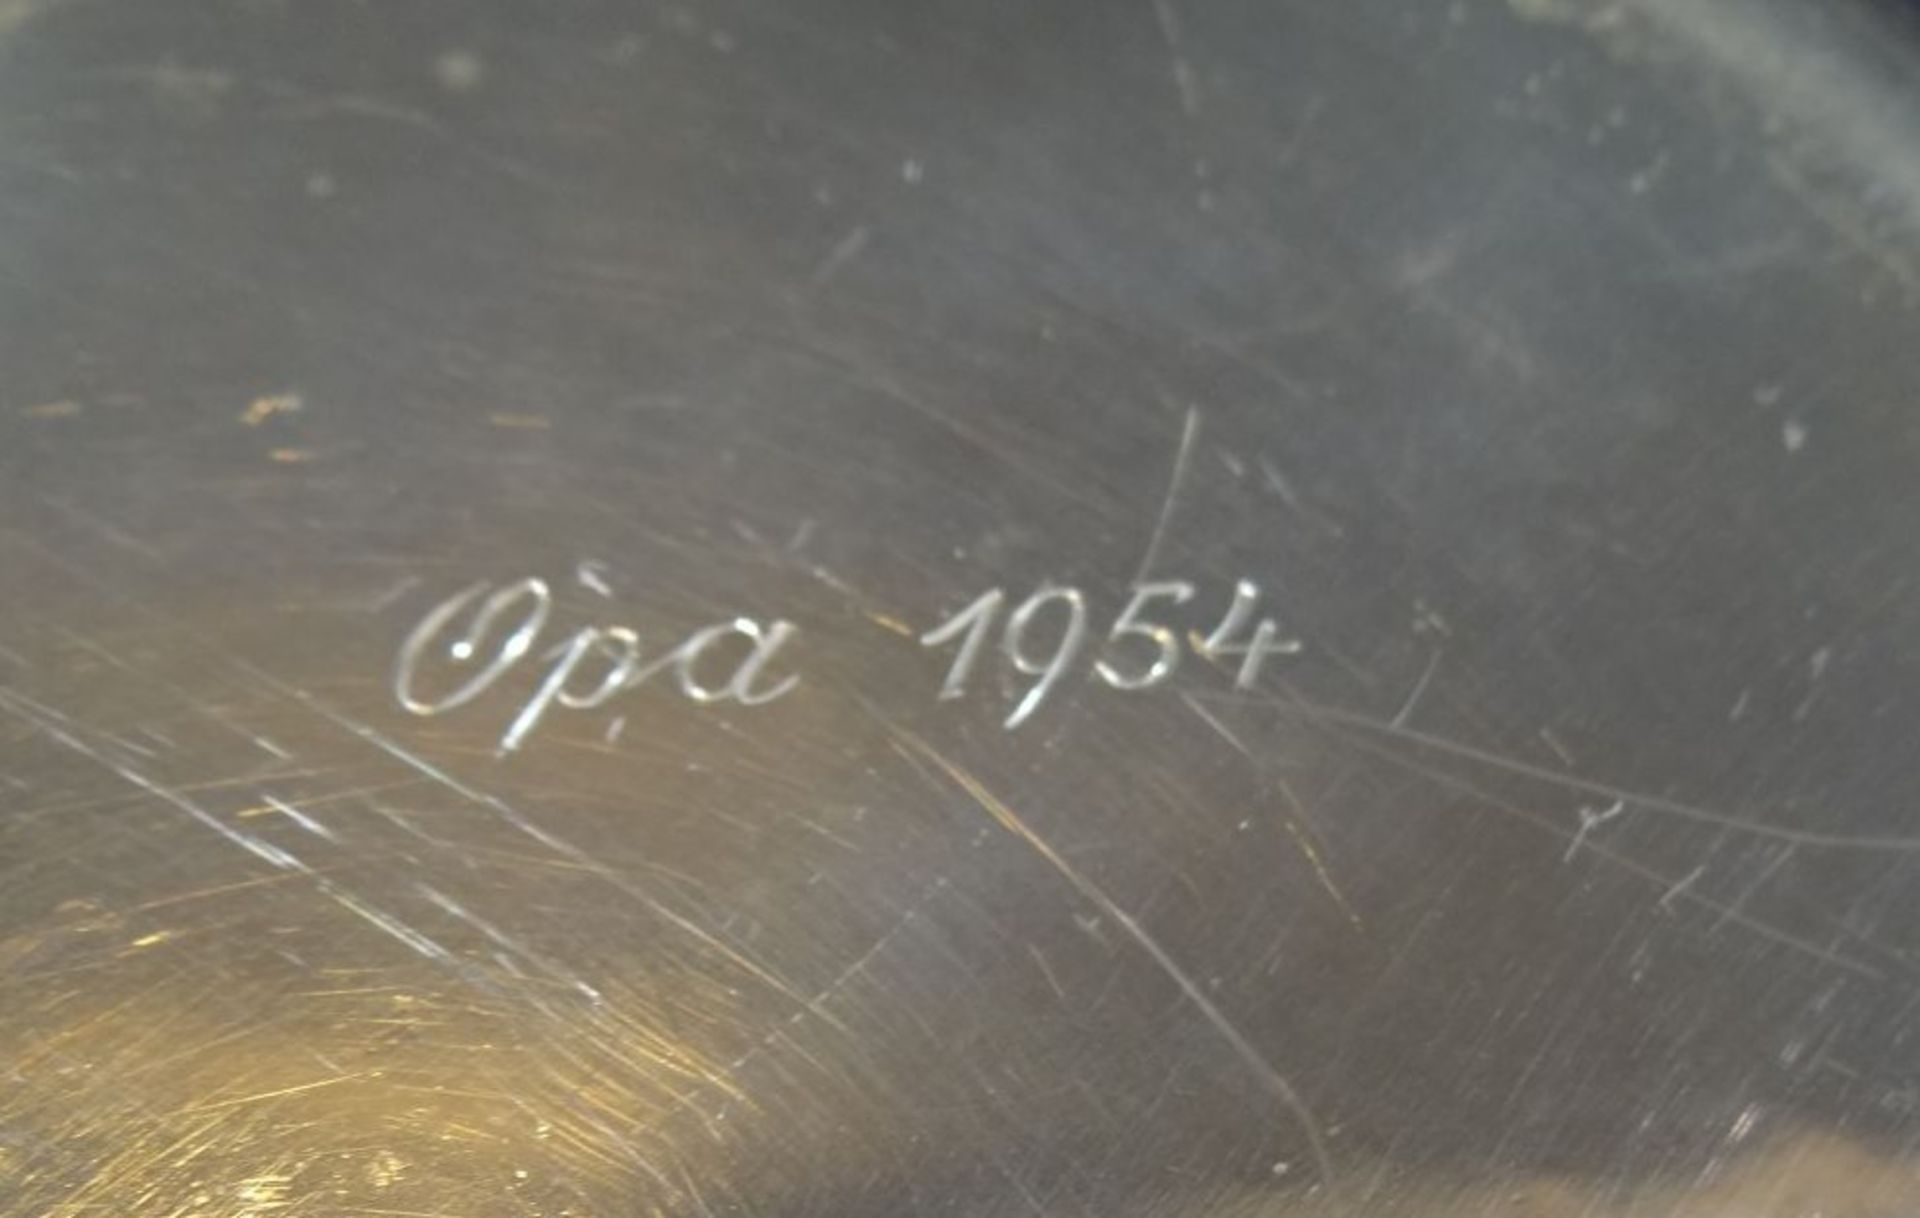 kl. Schale, Silber-835- "WTB", verso beschriftet "Opa 1954", D-17 cm, 104 gr. - Bild 5 aus 5